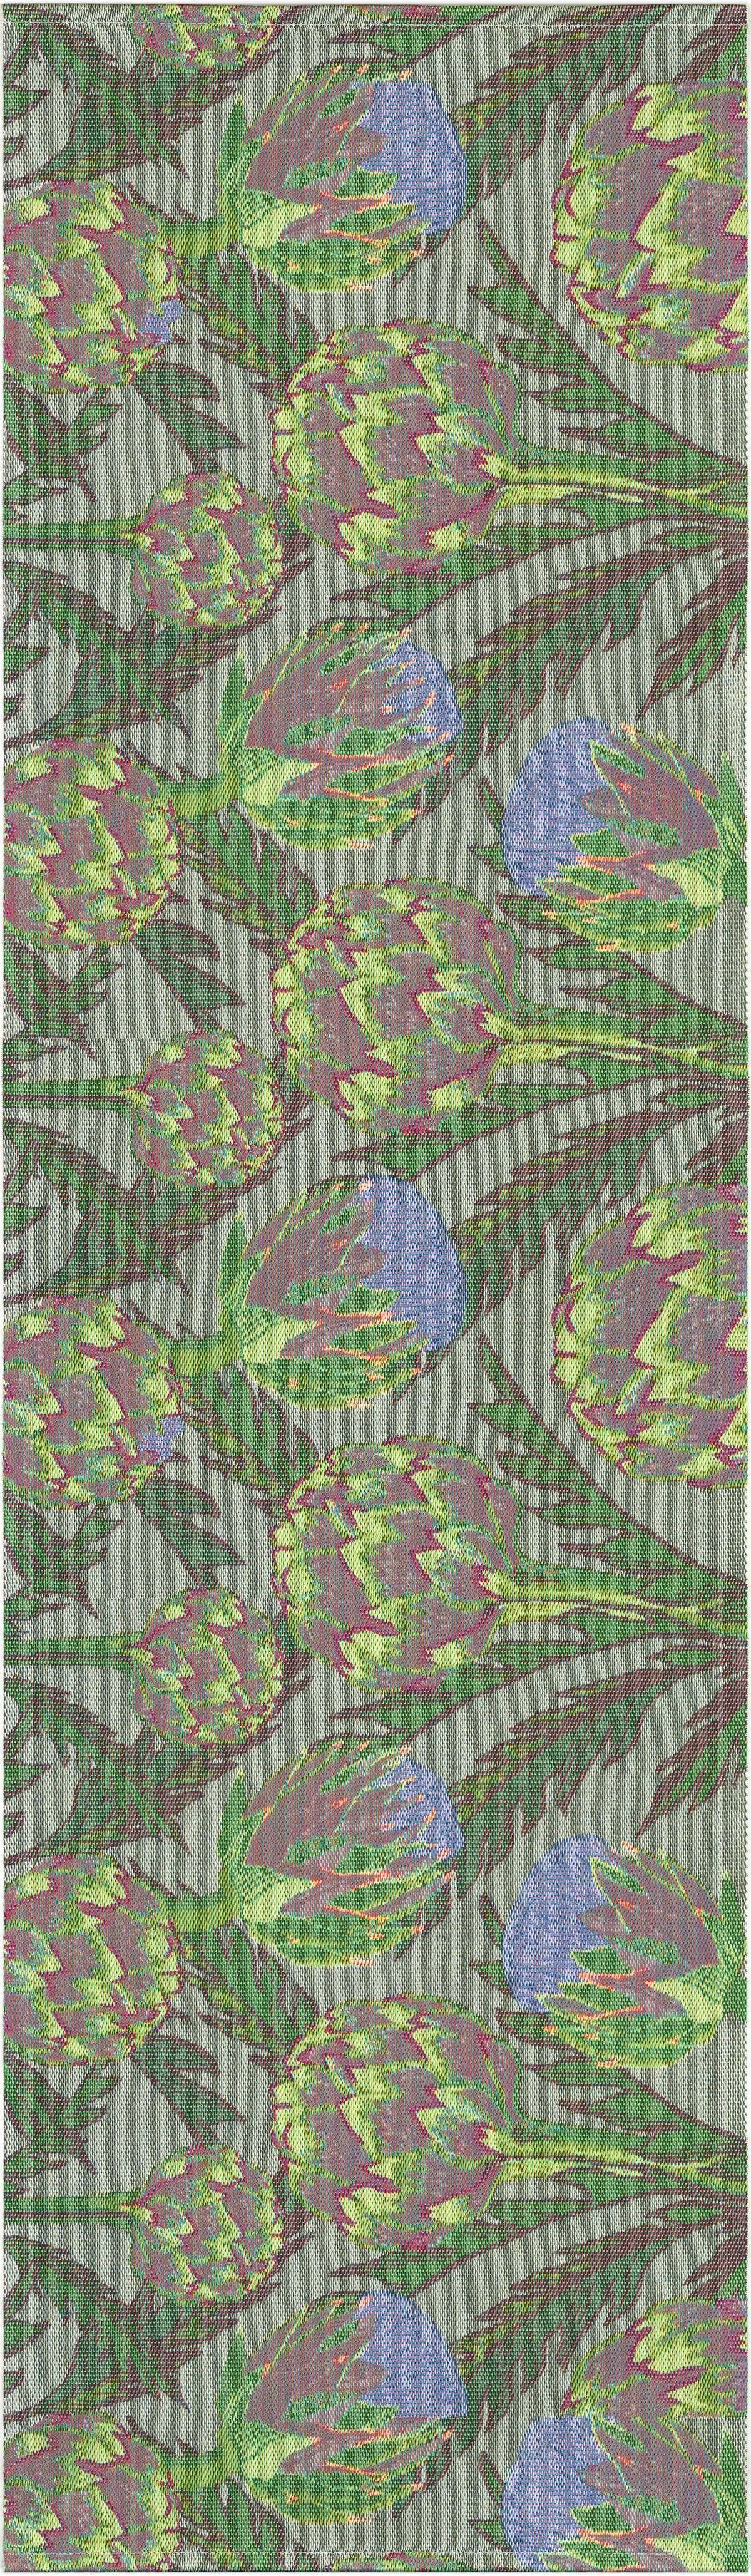 Ekelund Tischläufer Tischläufer Artichoke 35x120 cm, Pixel gewebt (6-farbig)